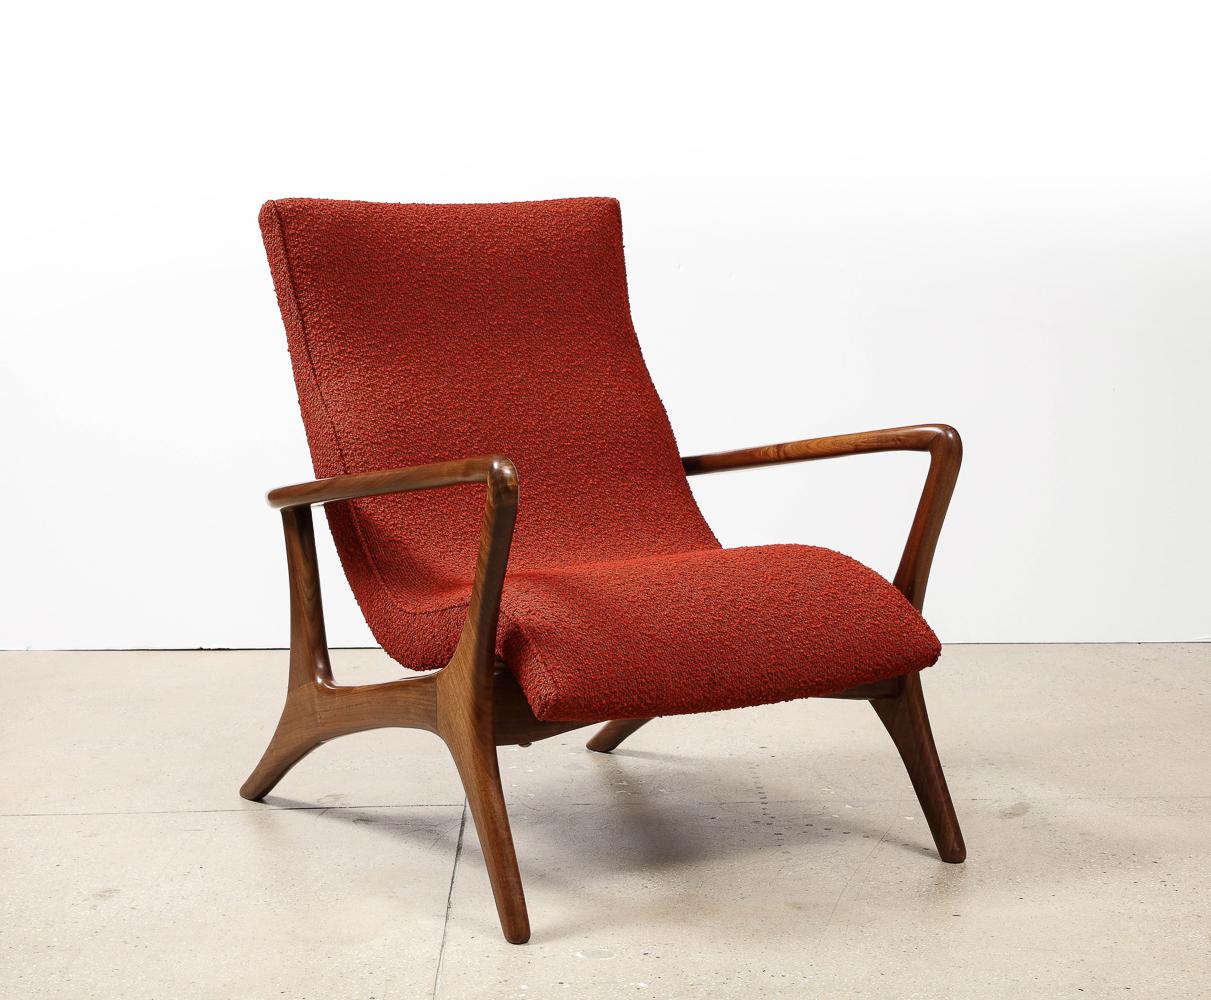 Rare Contour Lounge Chair de Vladimir Kagan. Noyer, rembourrage. Une forme classique de Kagan avec un cadre sculptural en noyer. Design/One en 1953, cet exemplaire a été produit c.C. 1970.